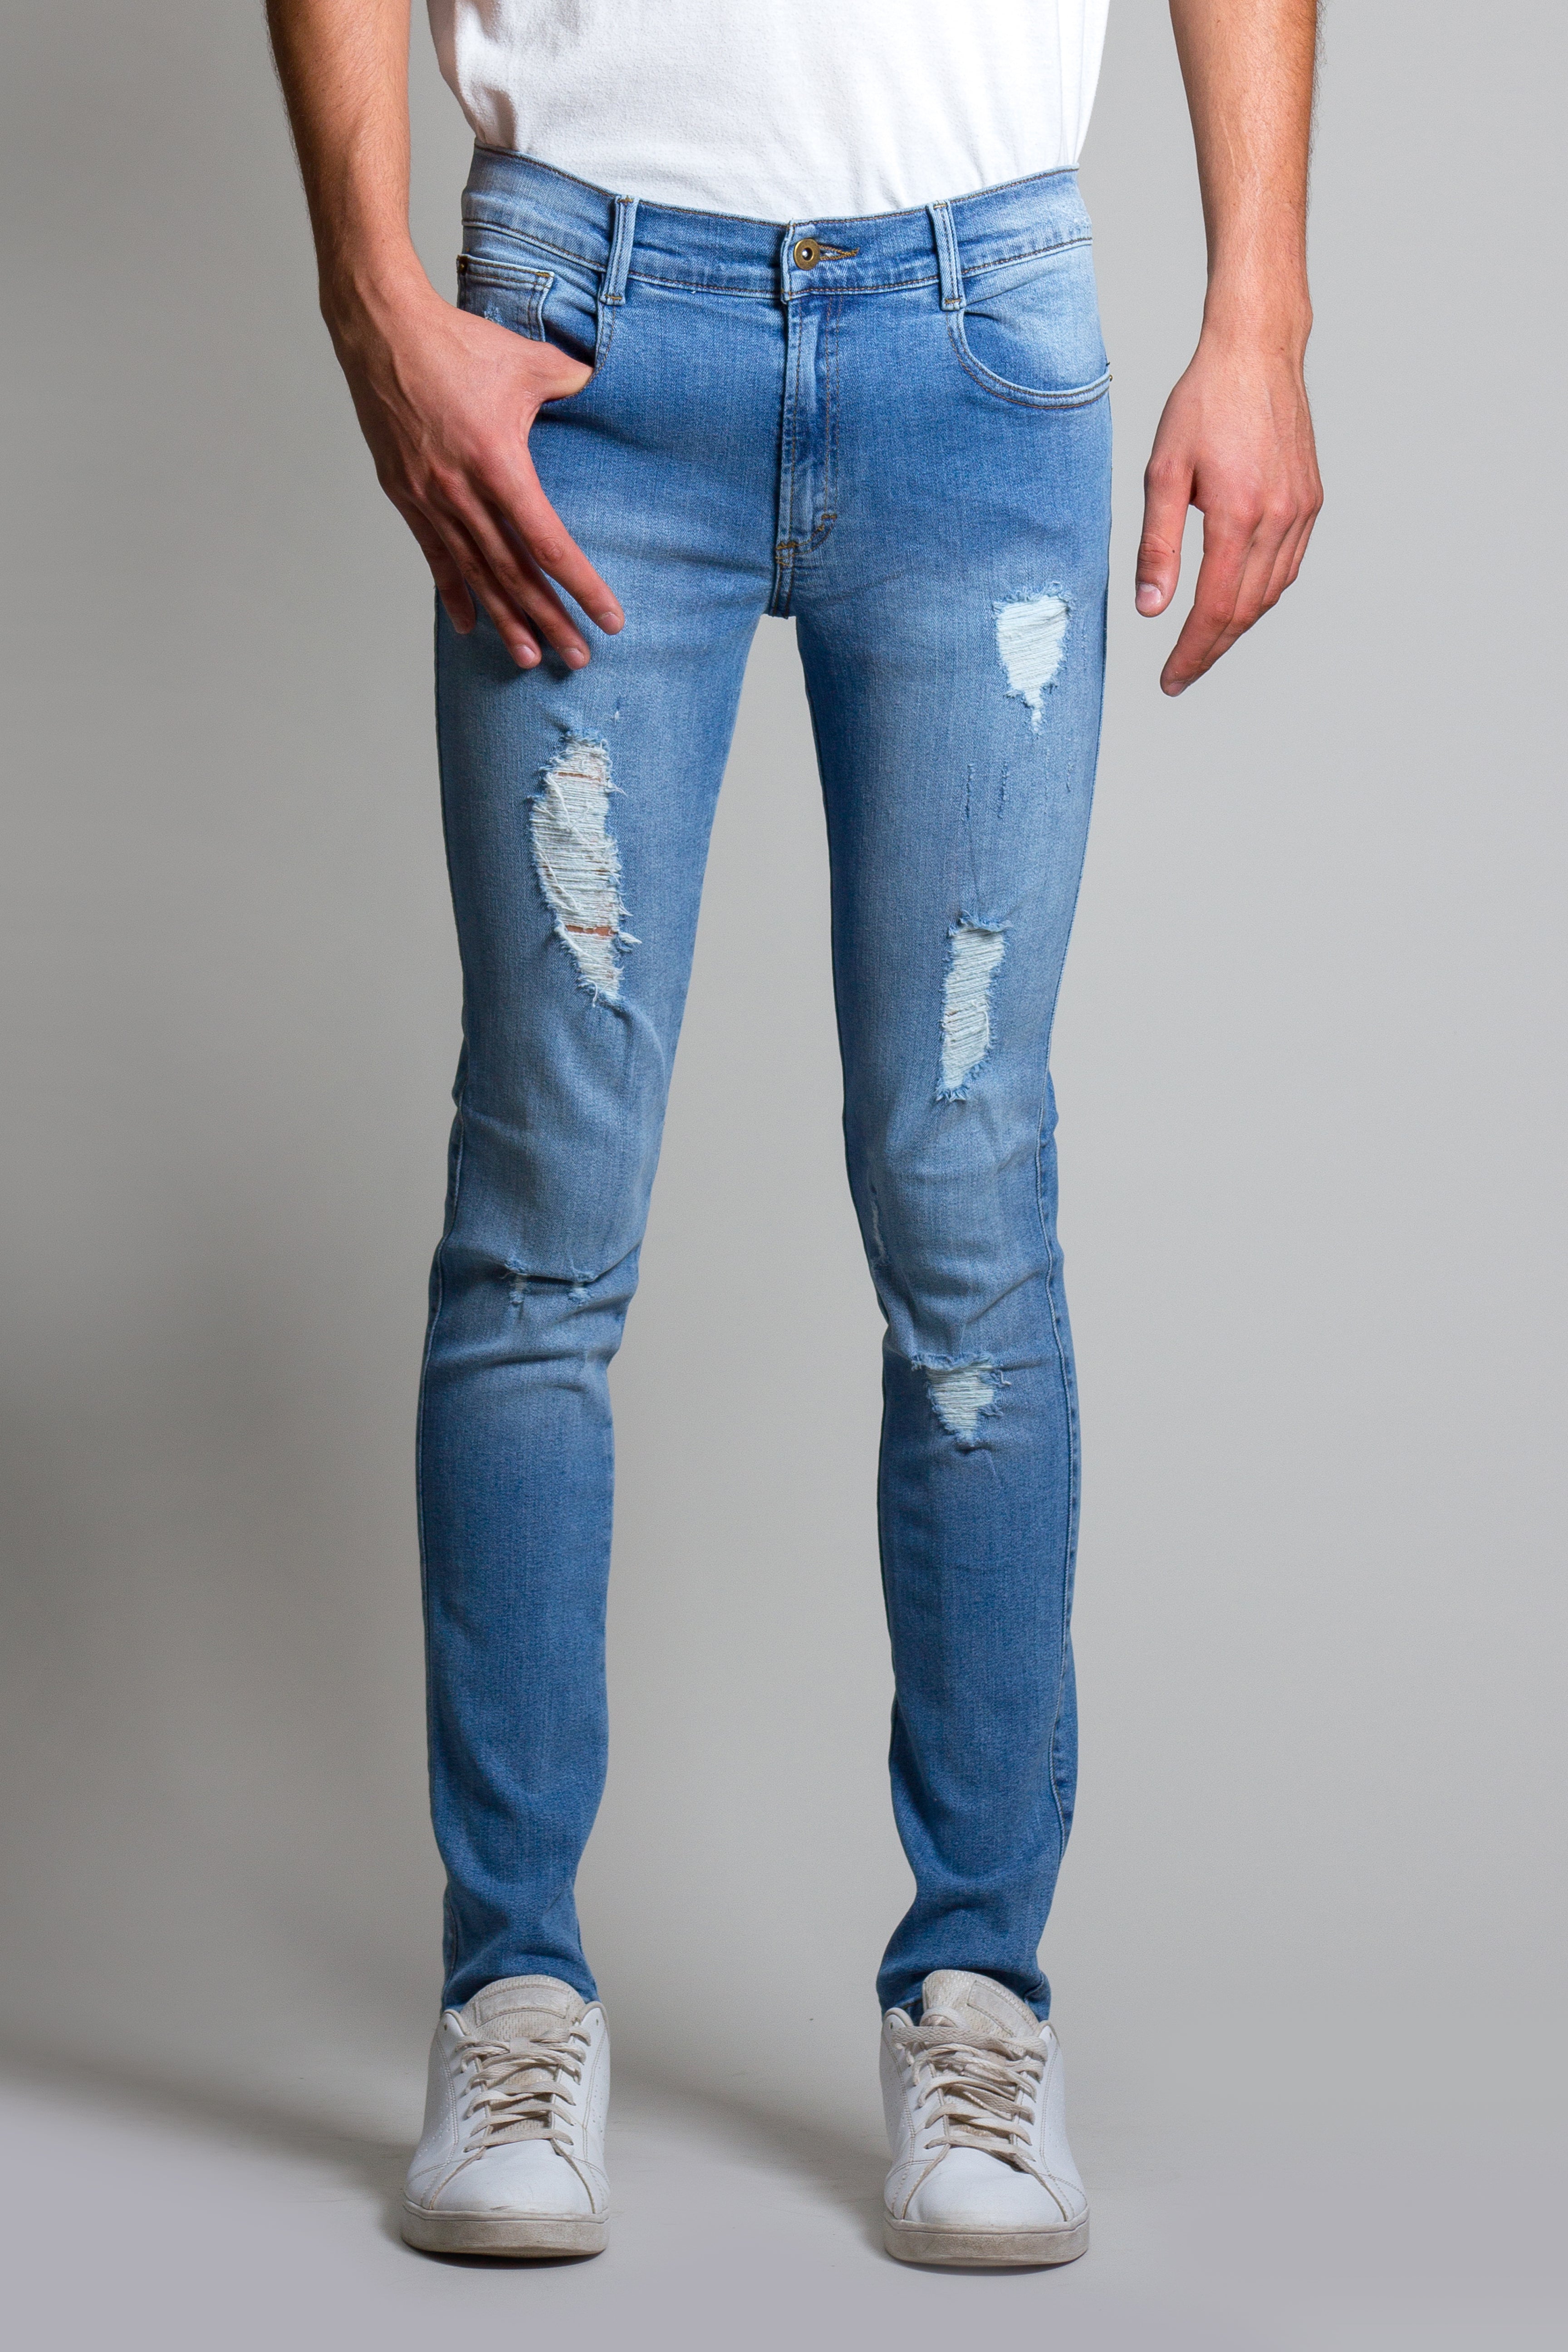 Jeans skinny de mezclilla stretch color azul medio con destrucción